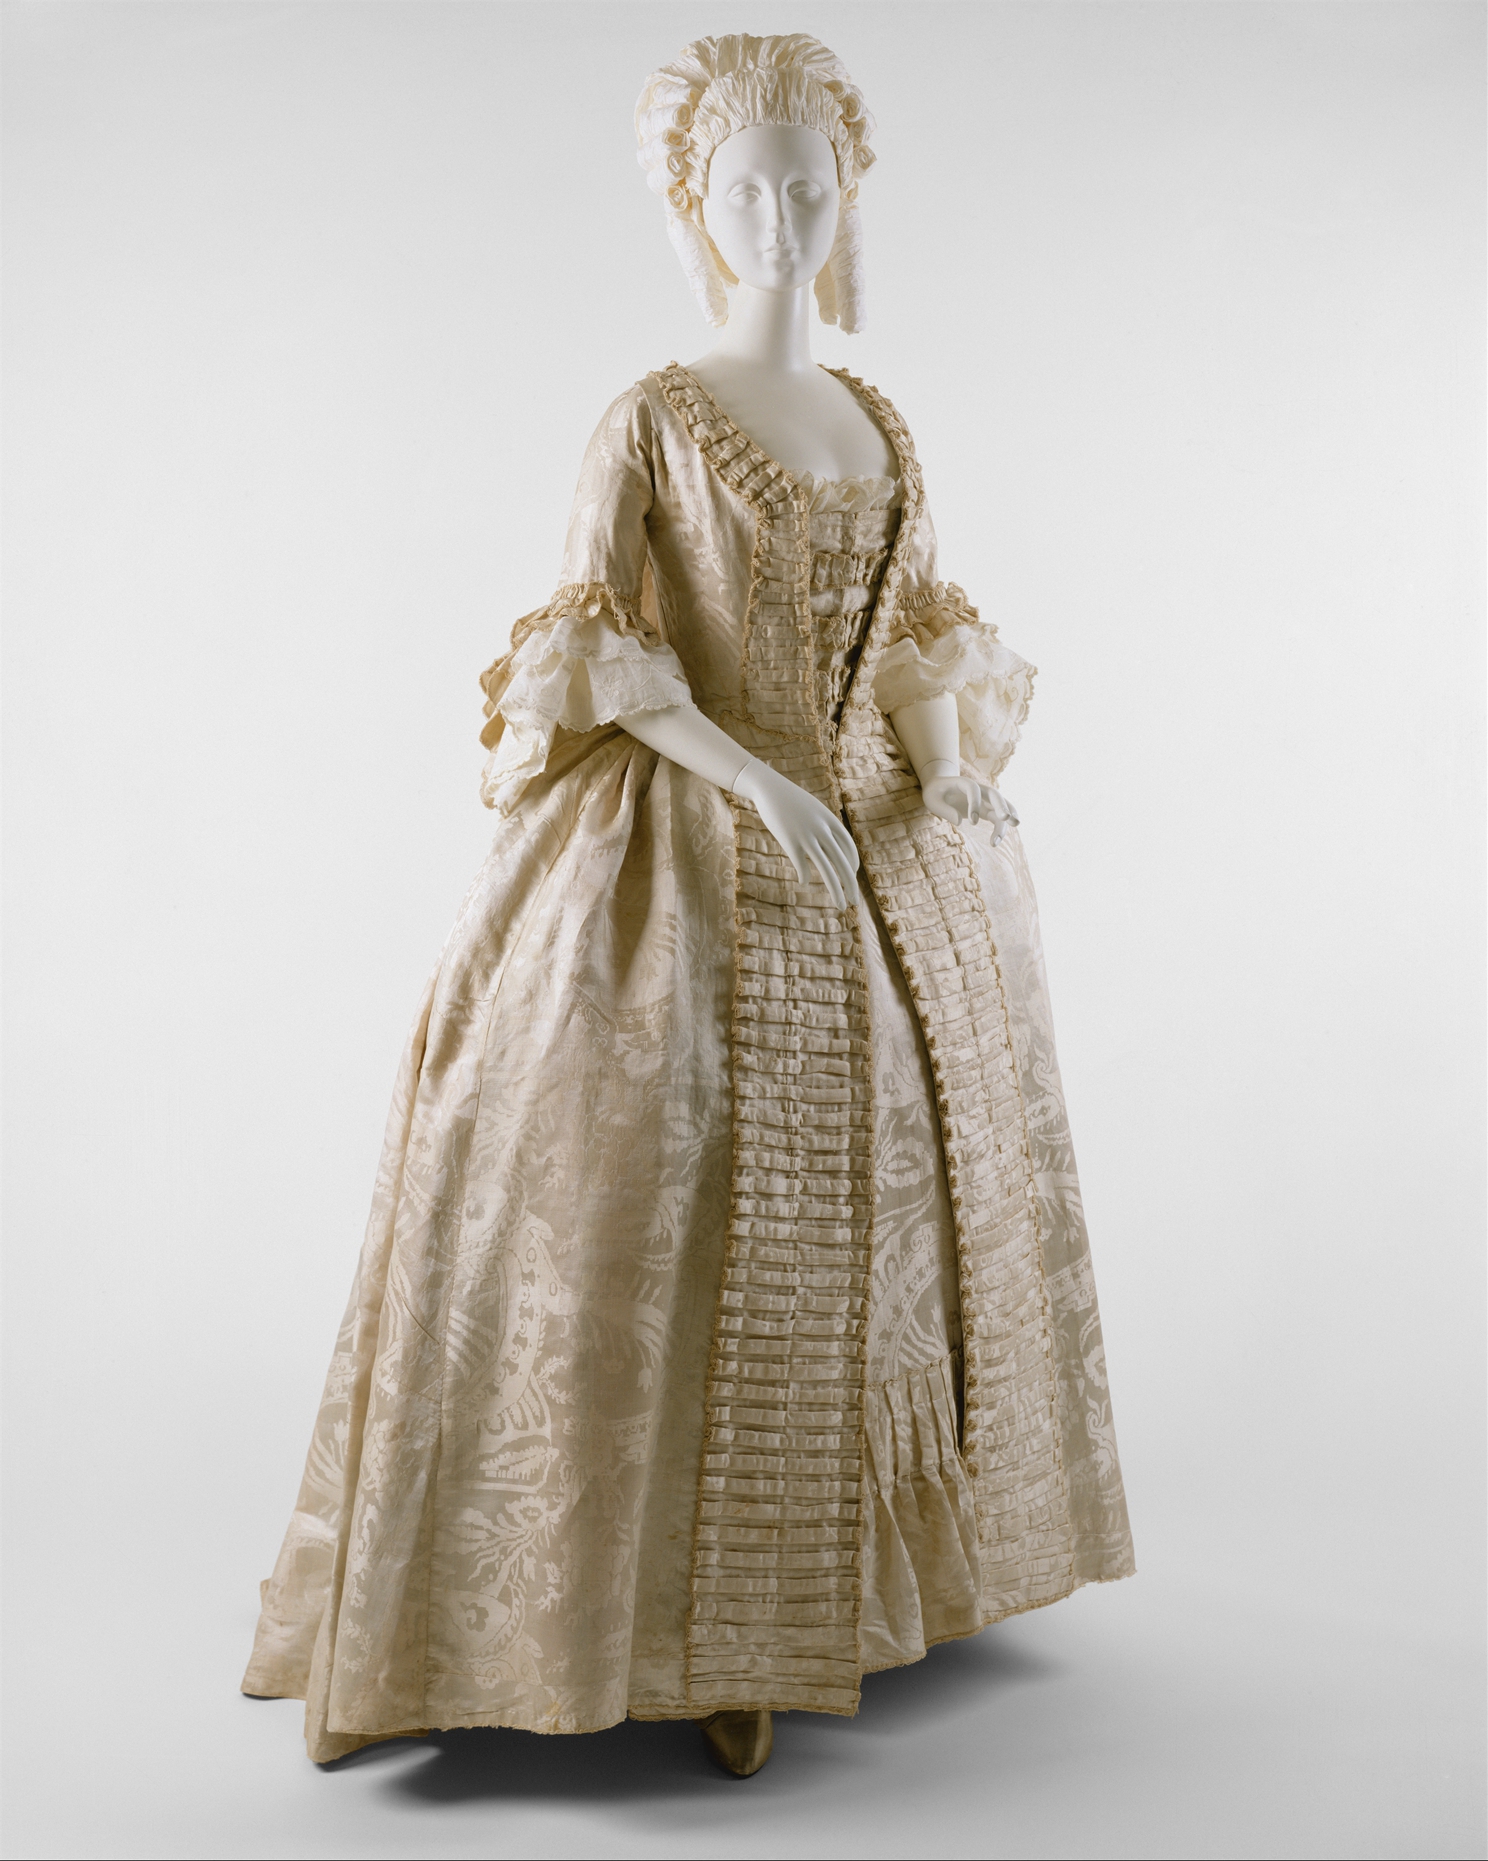 18th century dress styles